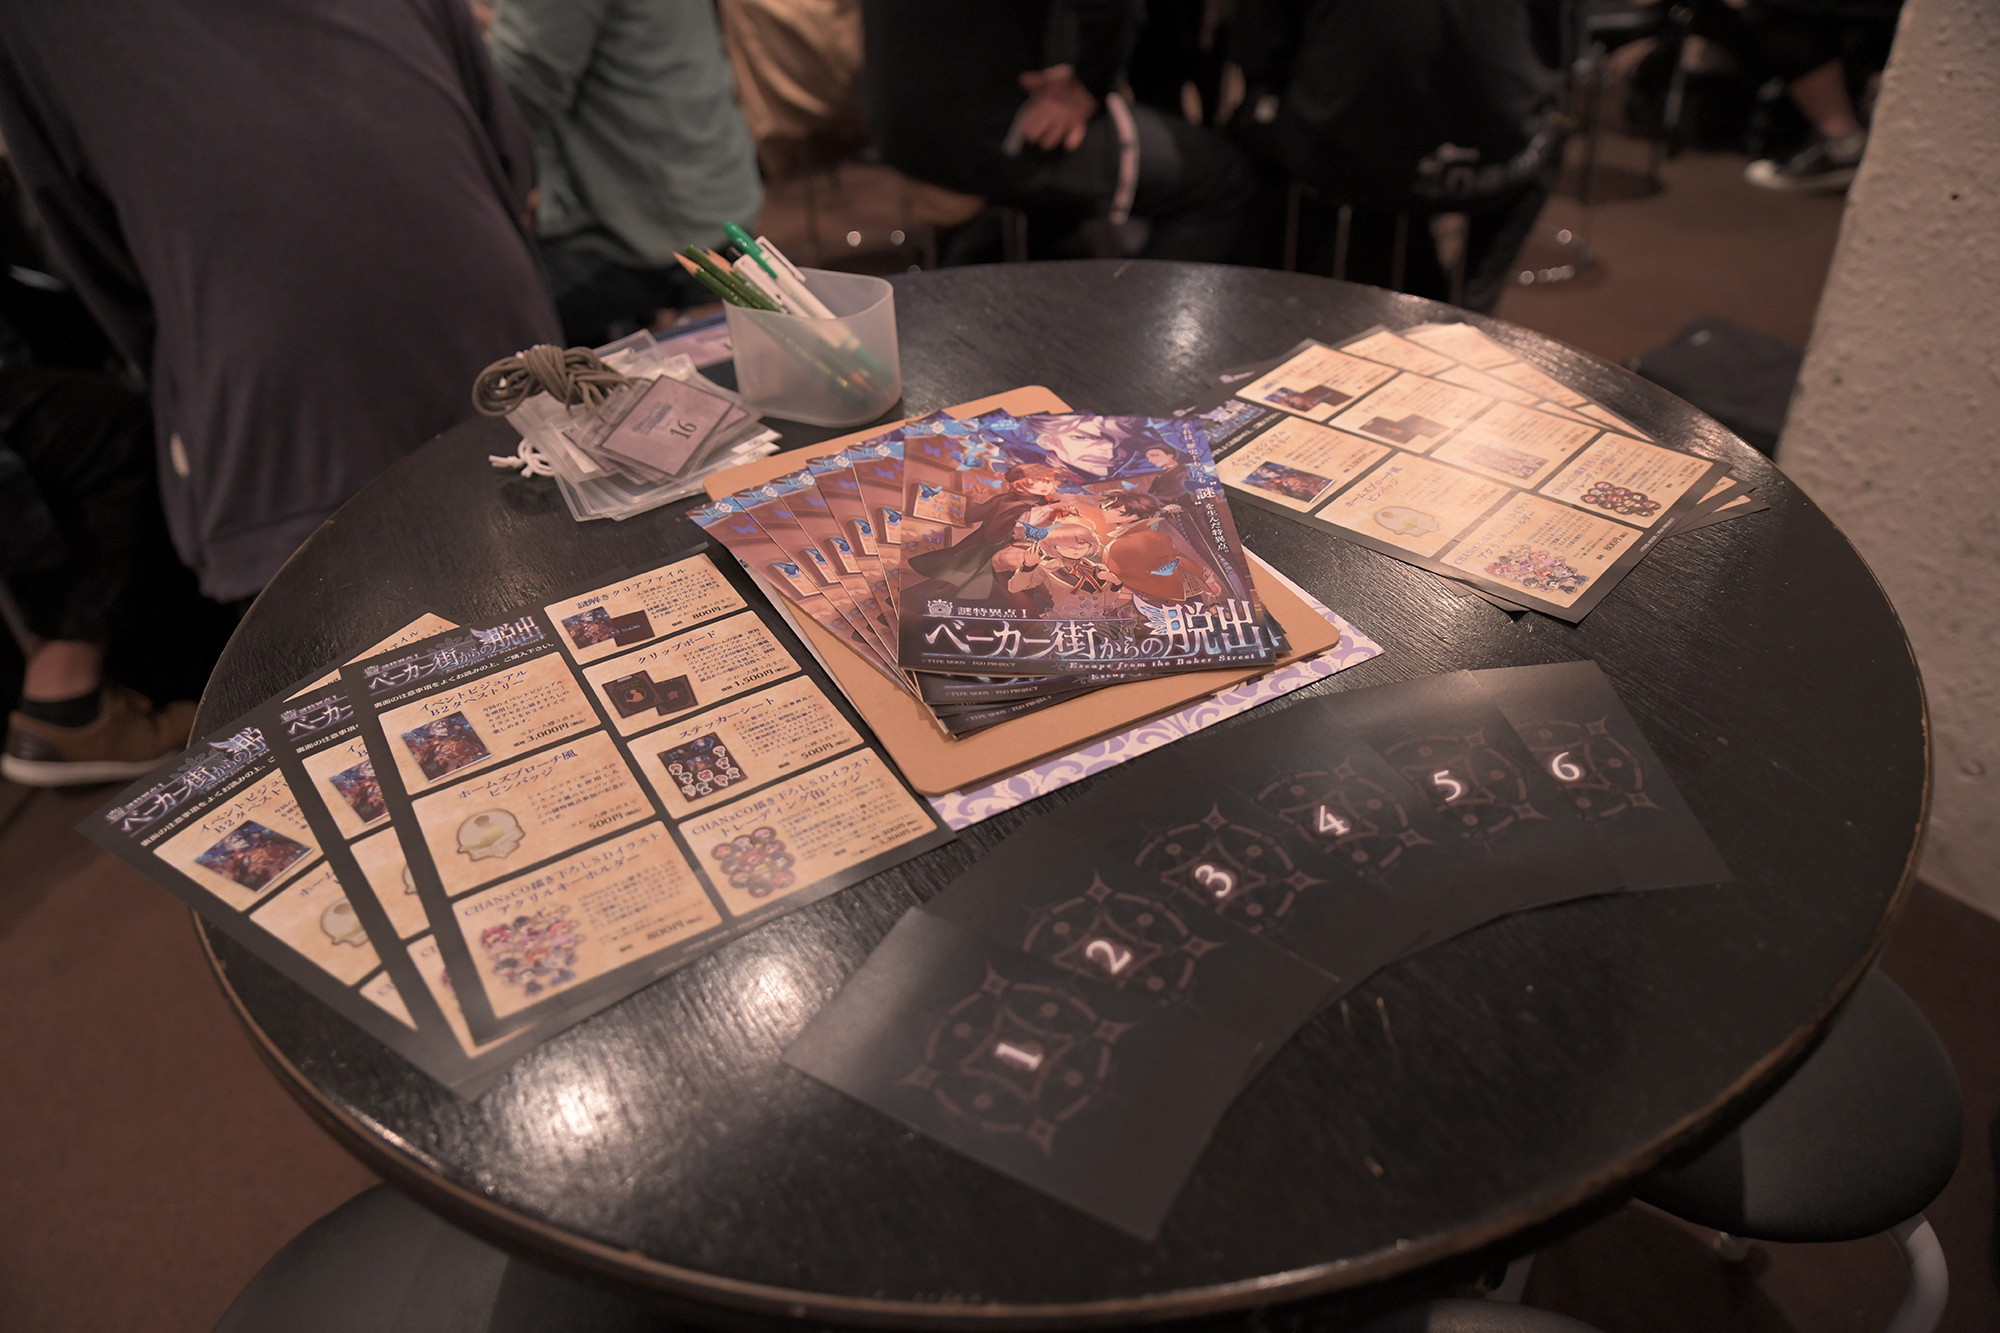 テーブル上にはゲームのパンフレットとサーヴァント召喚カードがプレイヤーを待っている。誰が自分のサーヴァントになるかはゲームが始まってからのお楽しみだ